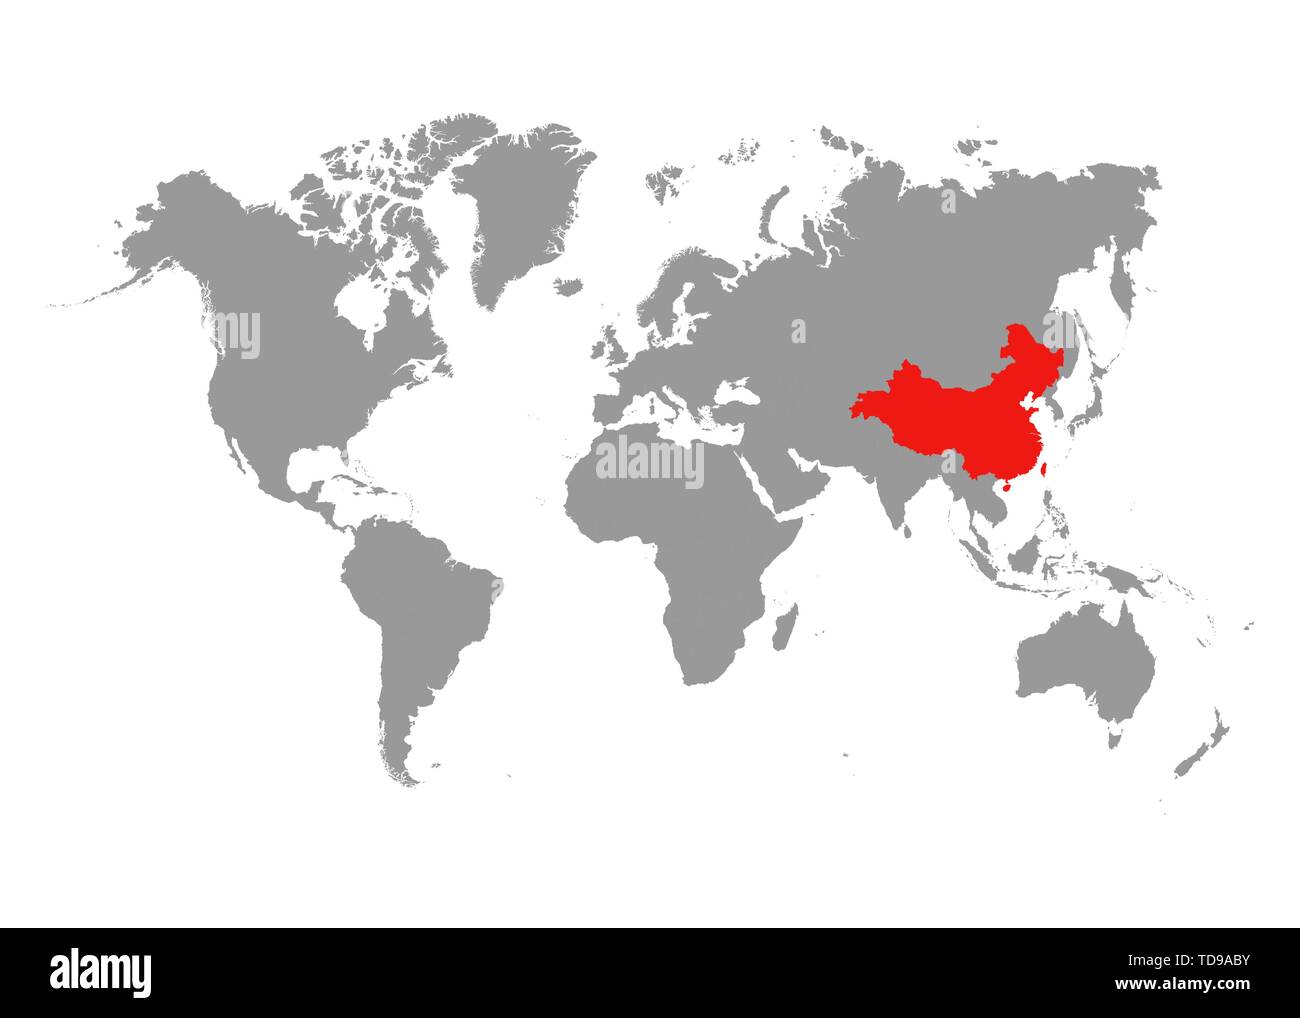 La carte de Chine est surligné en rouge sur la carte du monde. Vector Image  Vectorielle Stock - Alamy